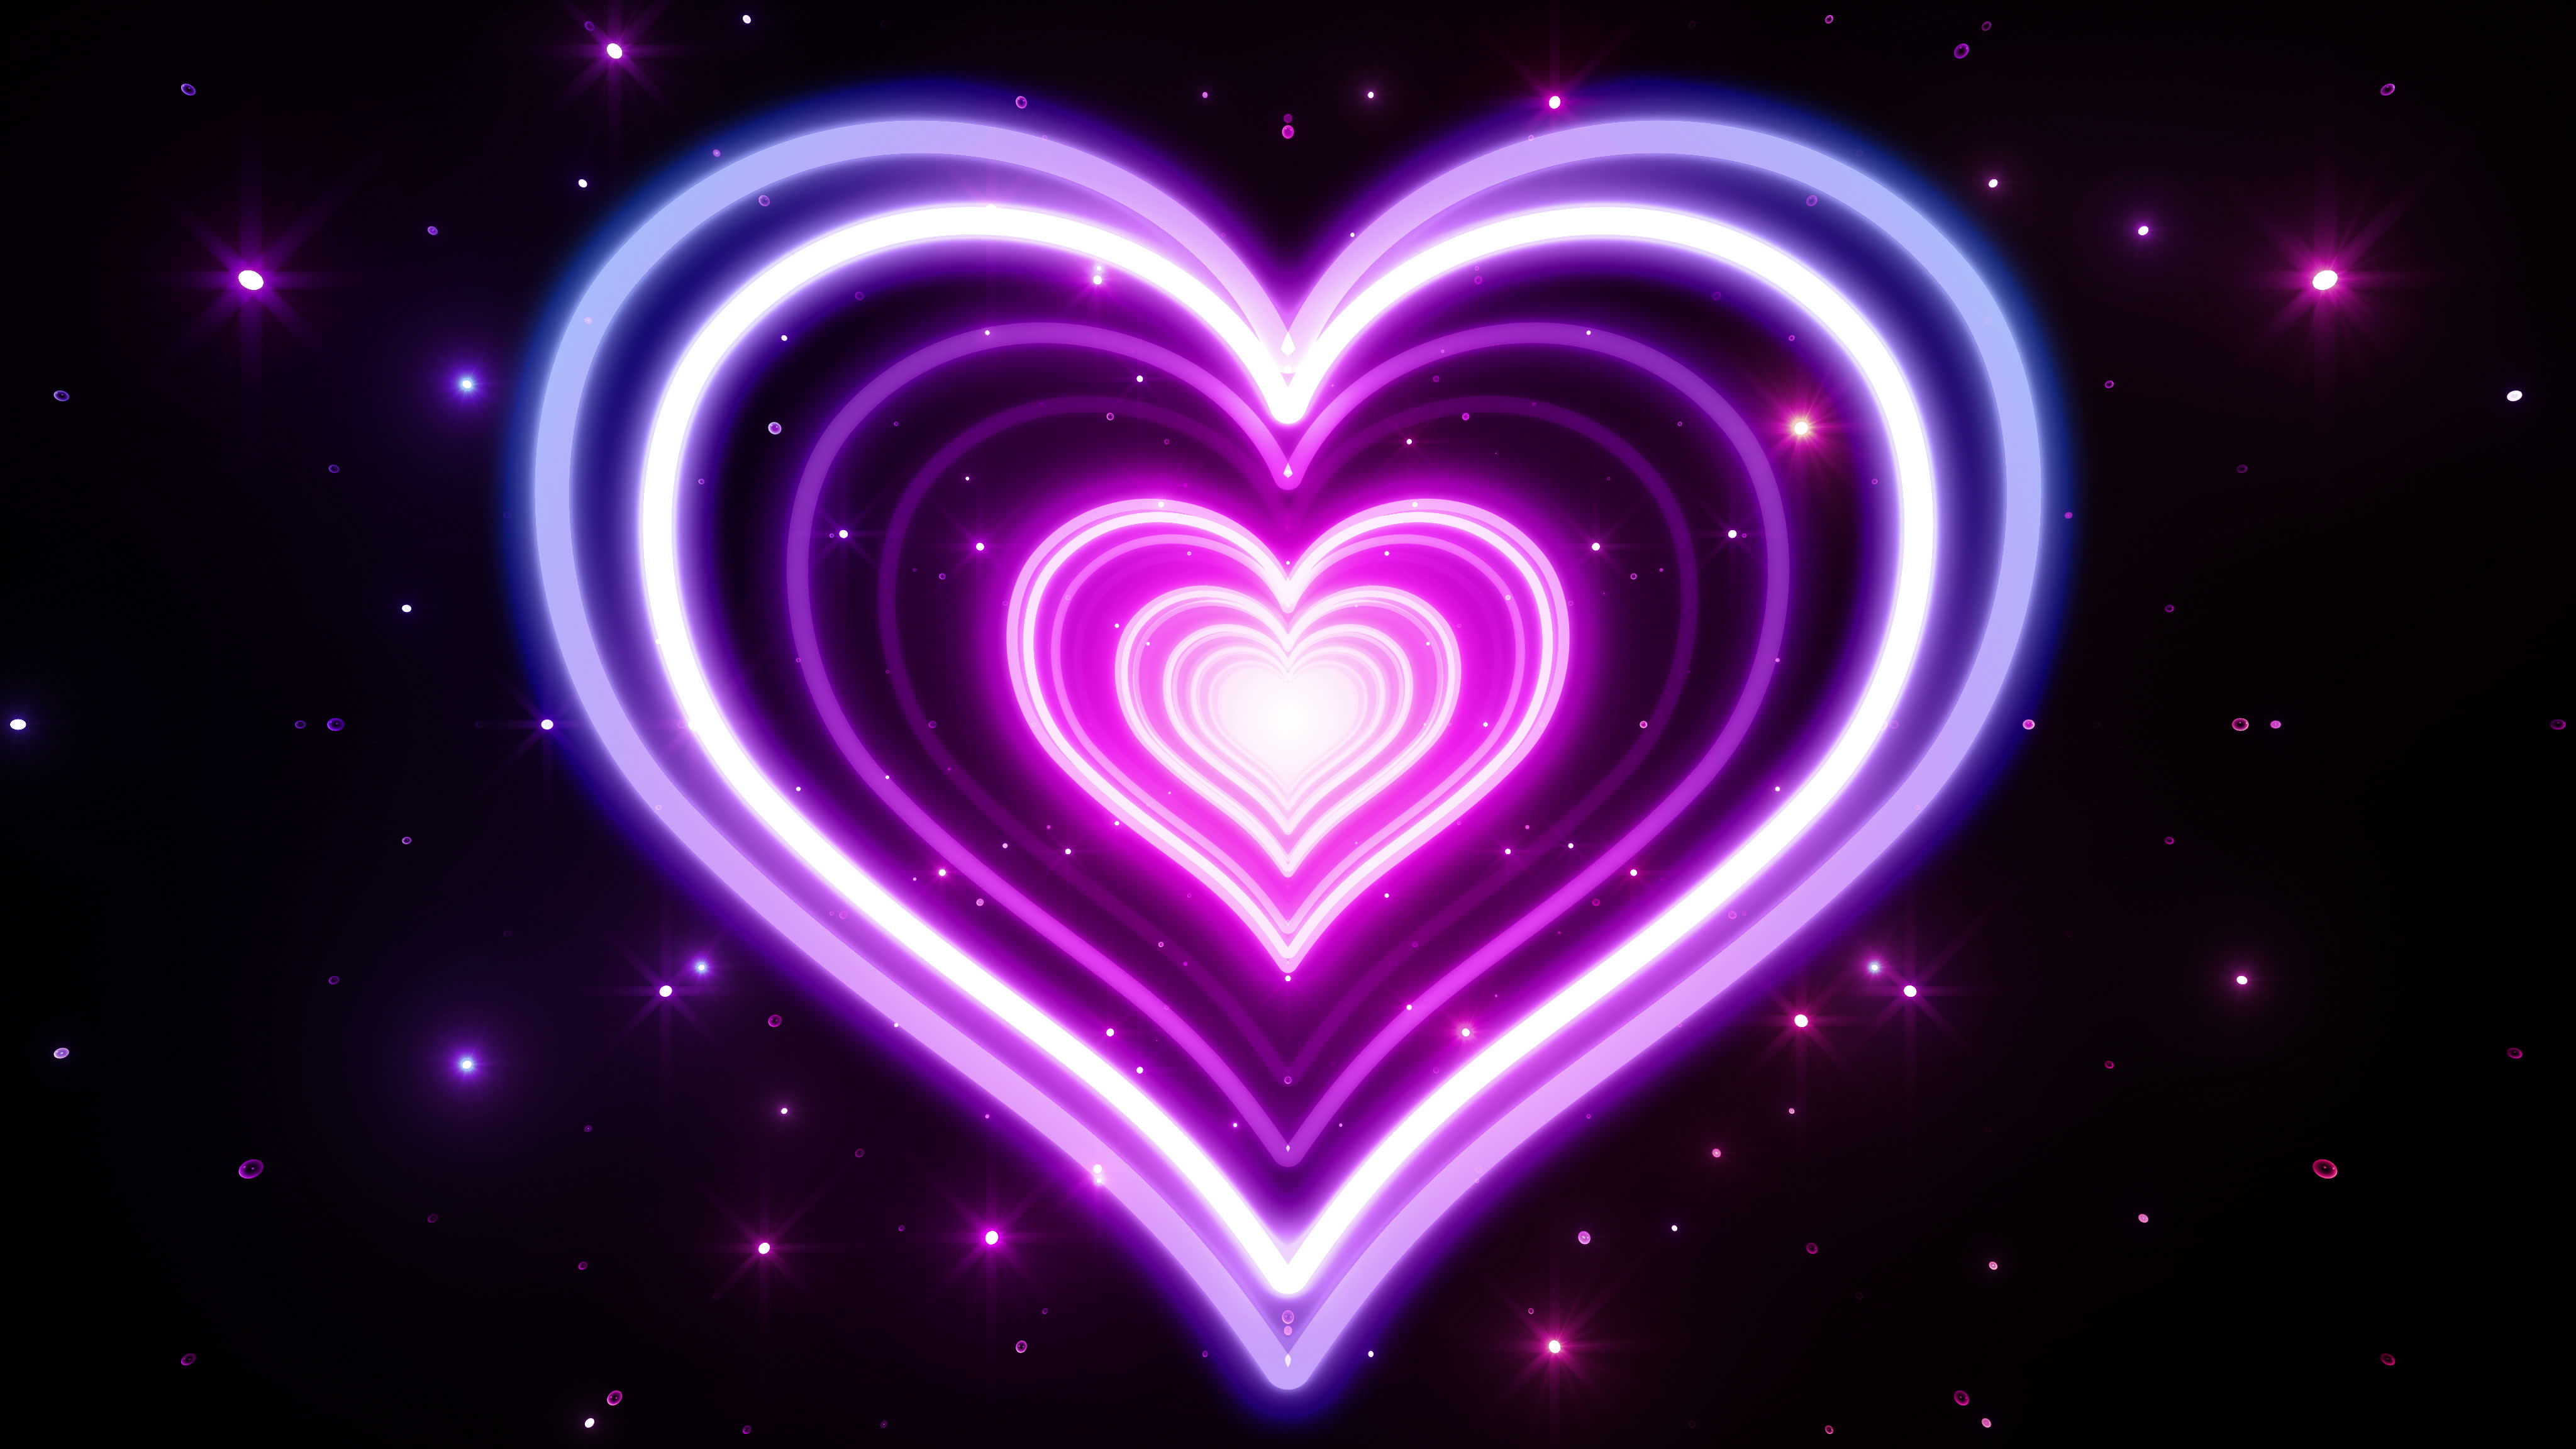 Purple Neon Heart Abstract 4k Ultra HD Wallpaper ...